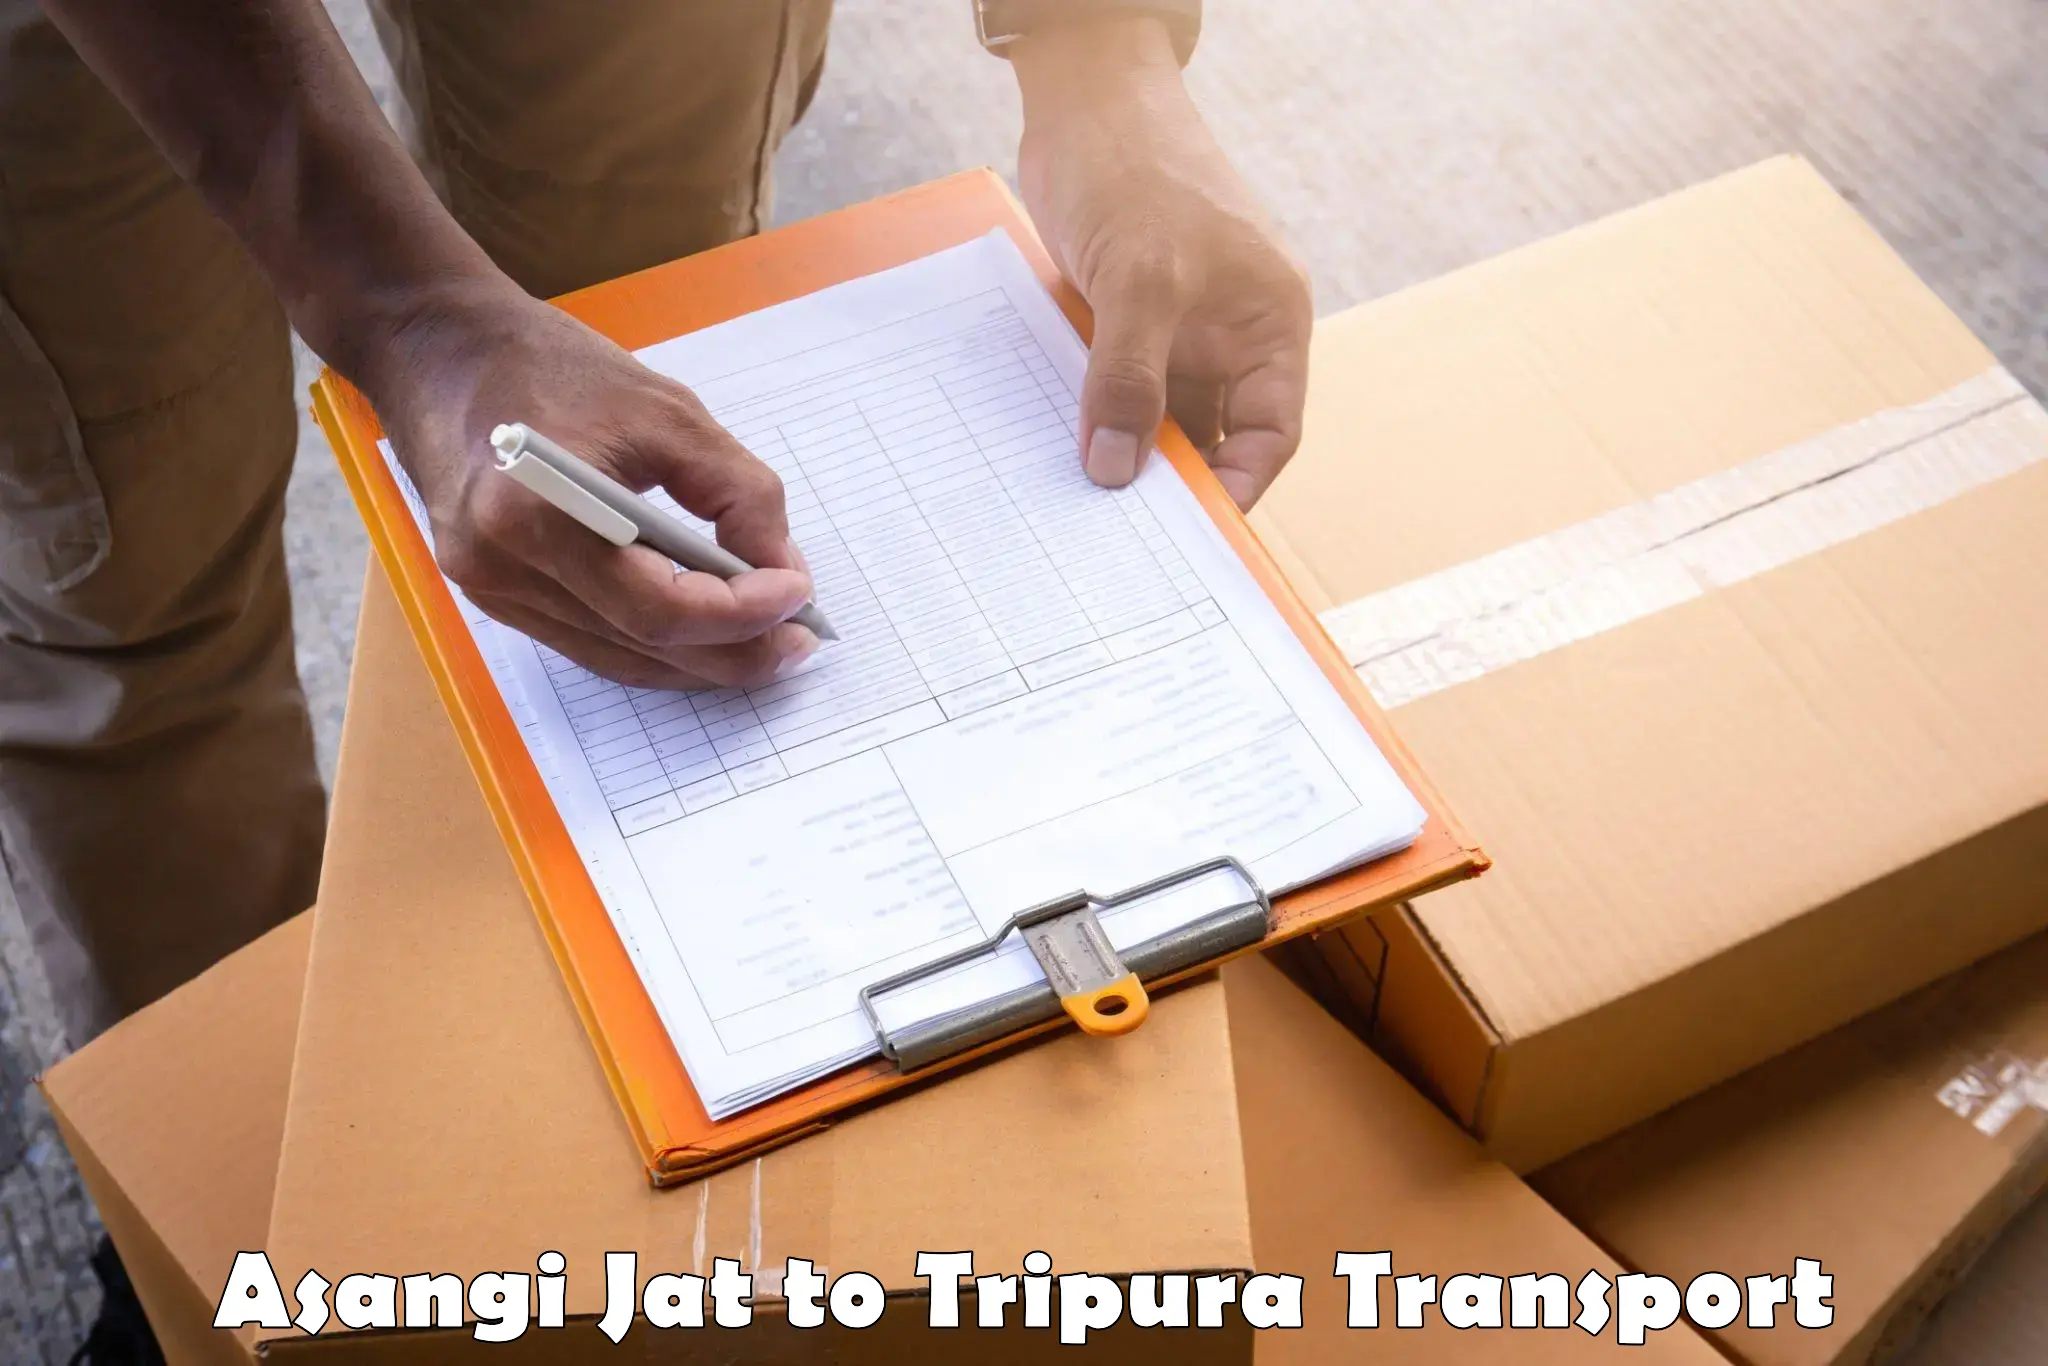 Luggage transport services Asangi Jat to Manughat